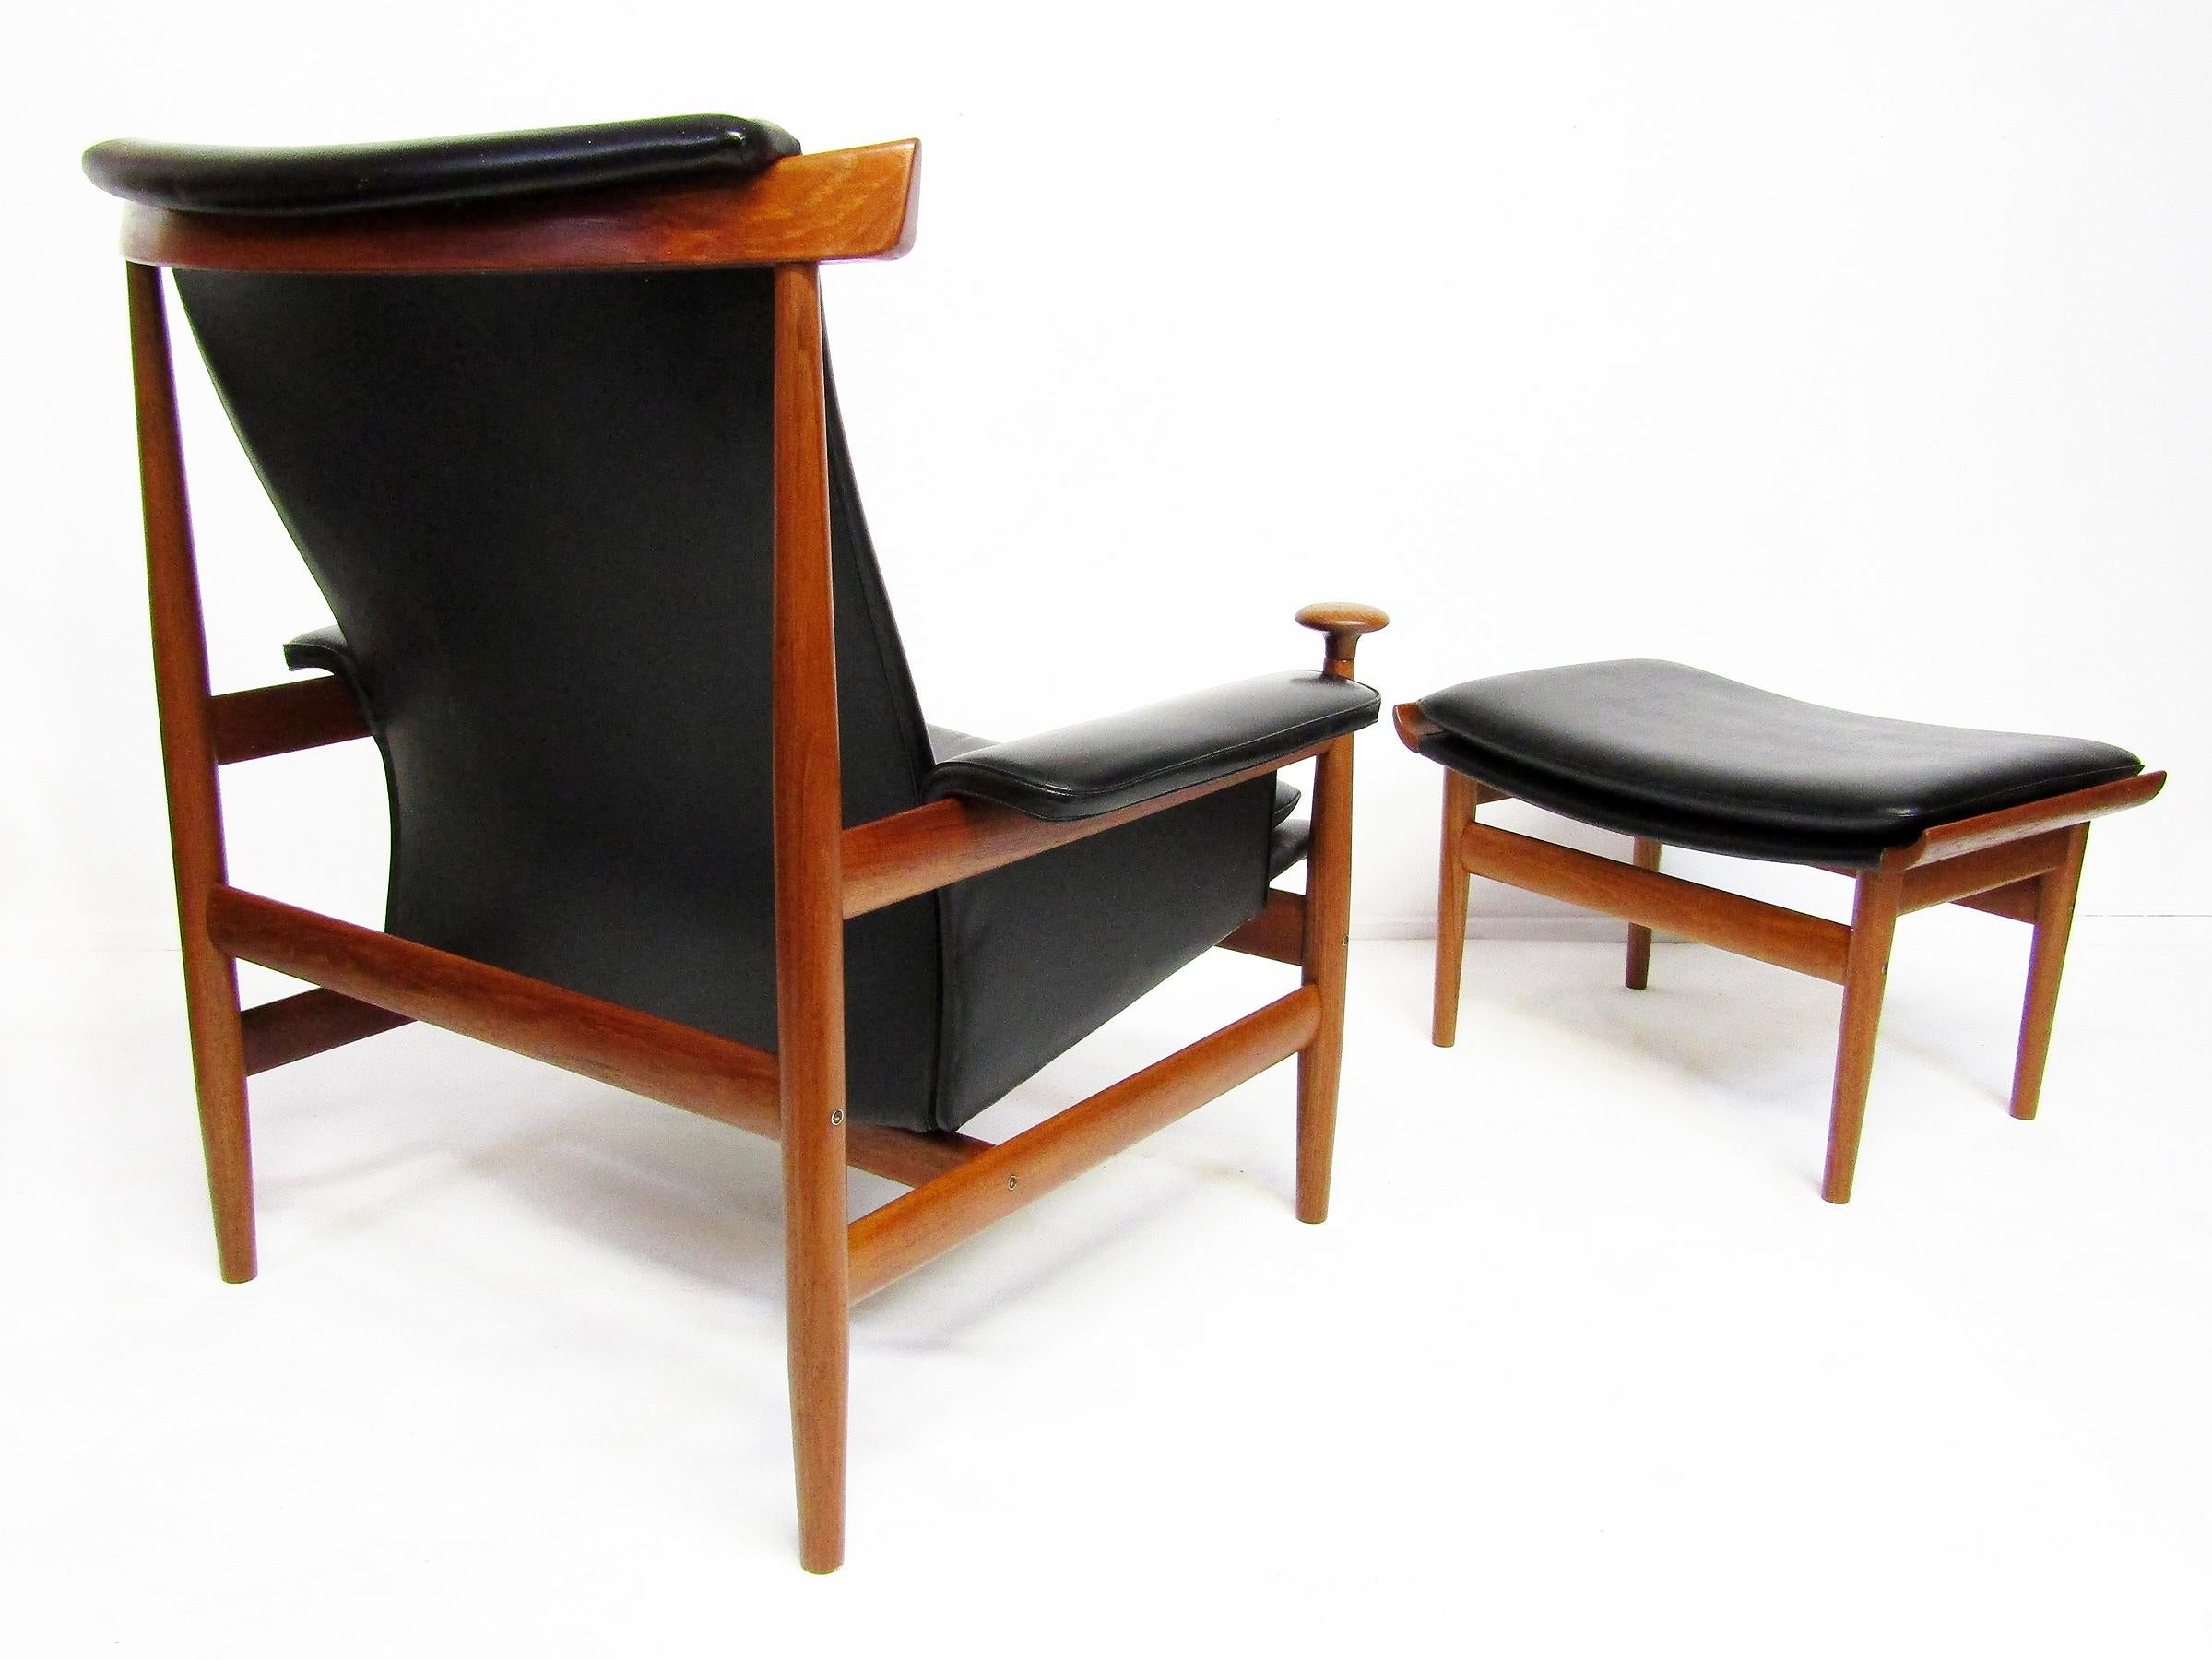 1960s Danish Bwana Chair & Ottoman By Finn Juhl In Teak & Skai For Sale 5